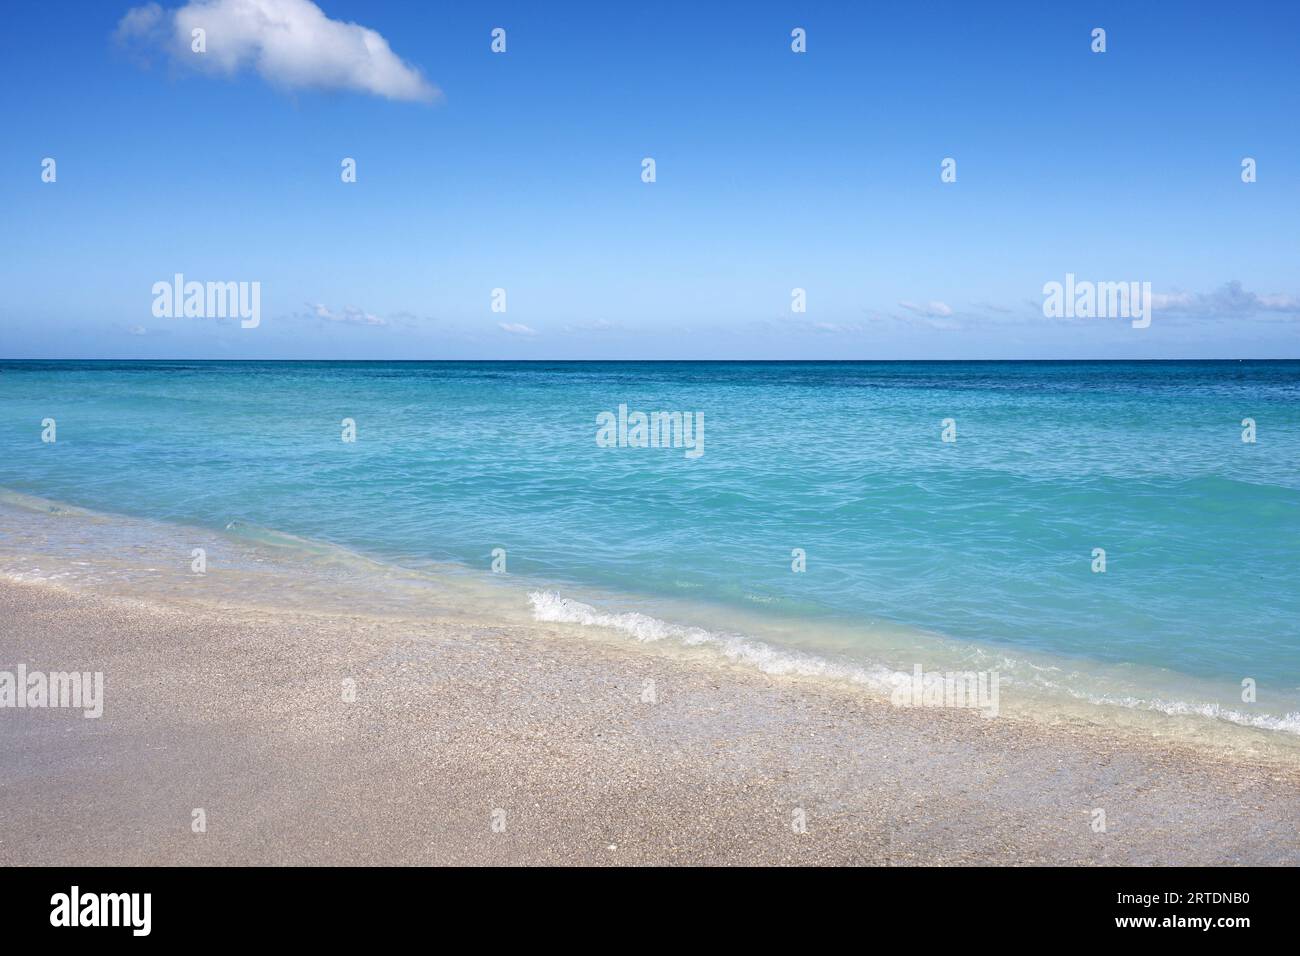 Spiaggia di mare vuota con sabbia bianca, vista delle onde azzurre e del cielo blu con nuvole. Costa caraibica, sfondo per vacanze in una natura paradisiaca Foto Stock